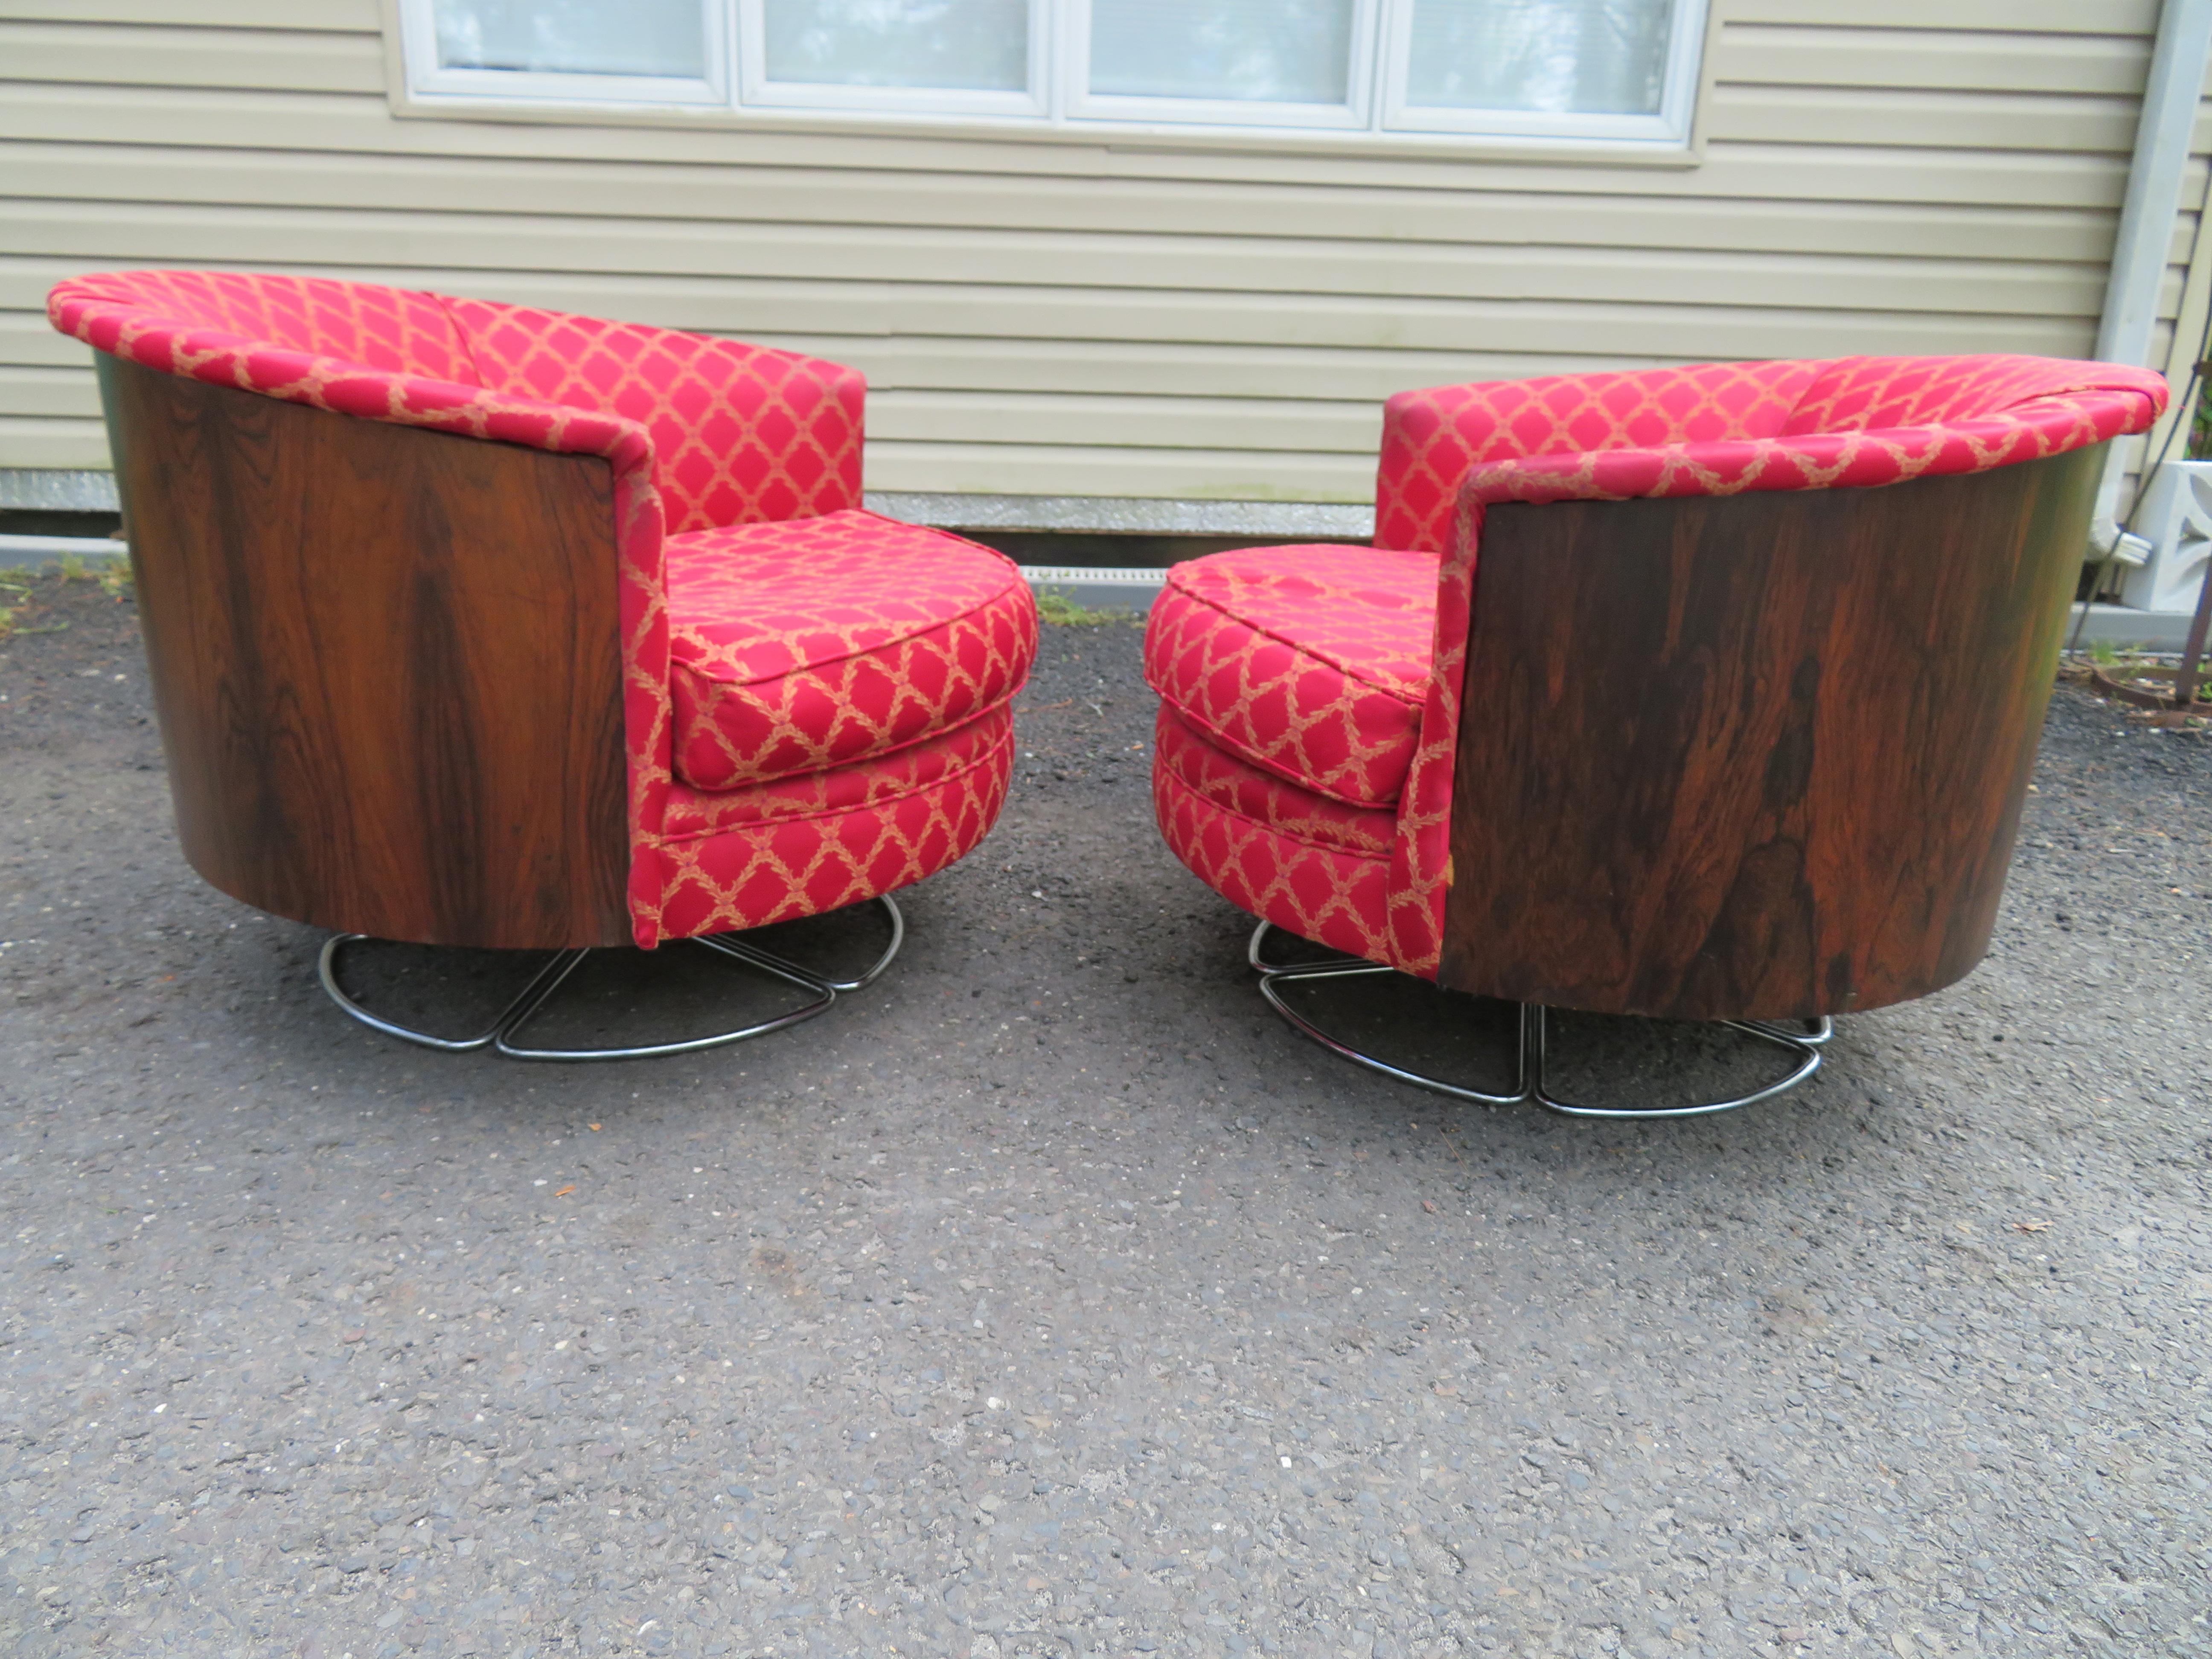 Magnifique paire de fauteuils pivotants en palissandre de style Milo Baughman par Selig. Ces chaises fines et rares ont été retapissées dans les années 80 et sont encore présentables. Le palissandre est sombre et riche et en grande forme. Ils